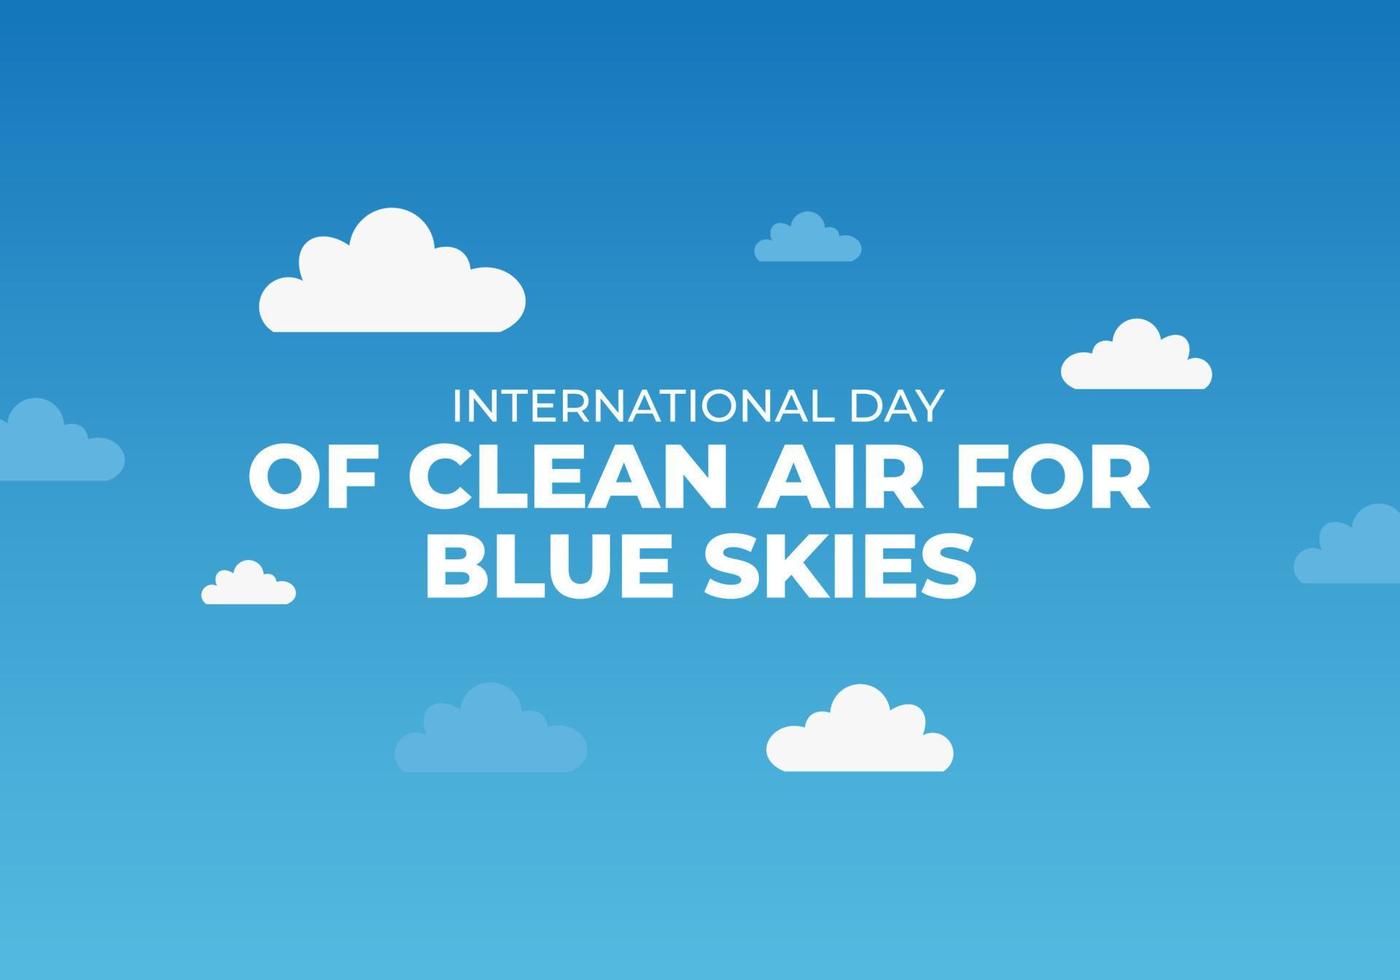 dia internacional de ar puro para céu azul sobre fundo azul. vetor